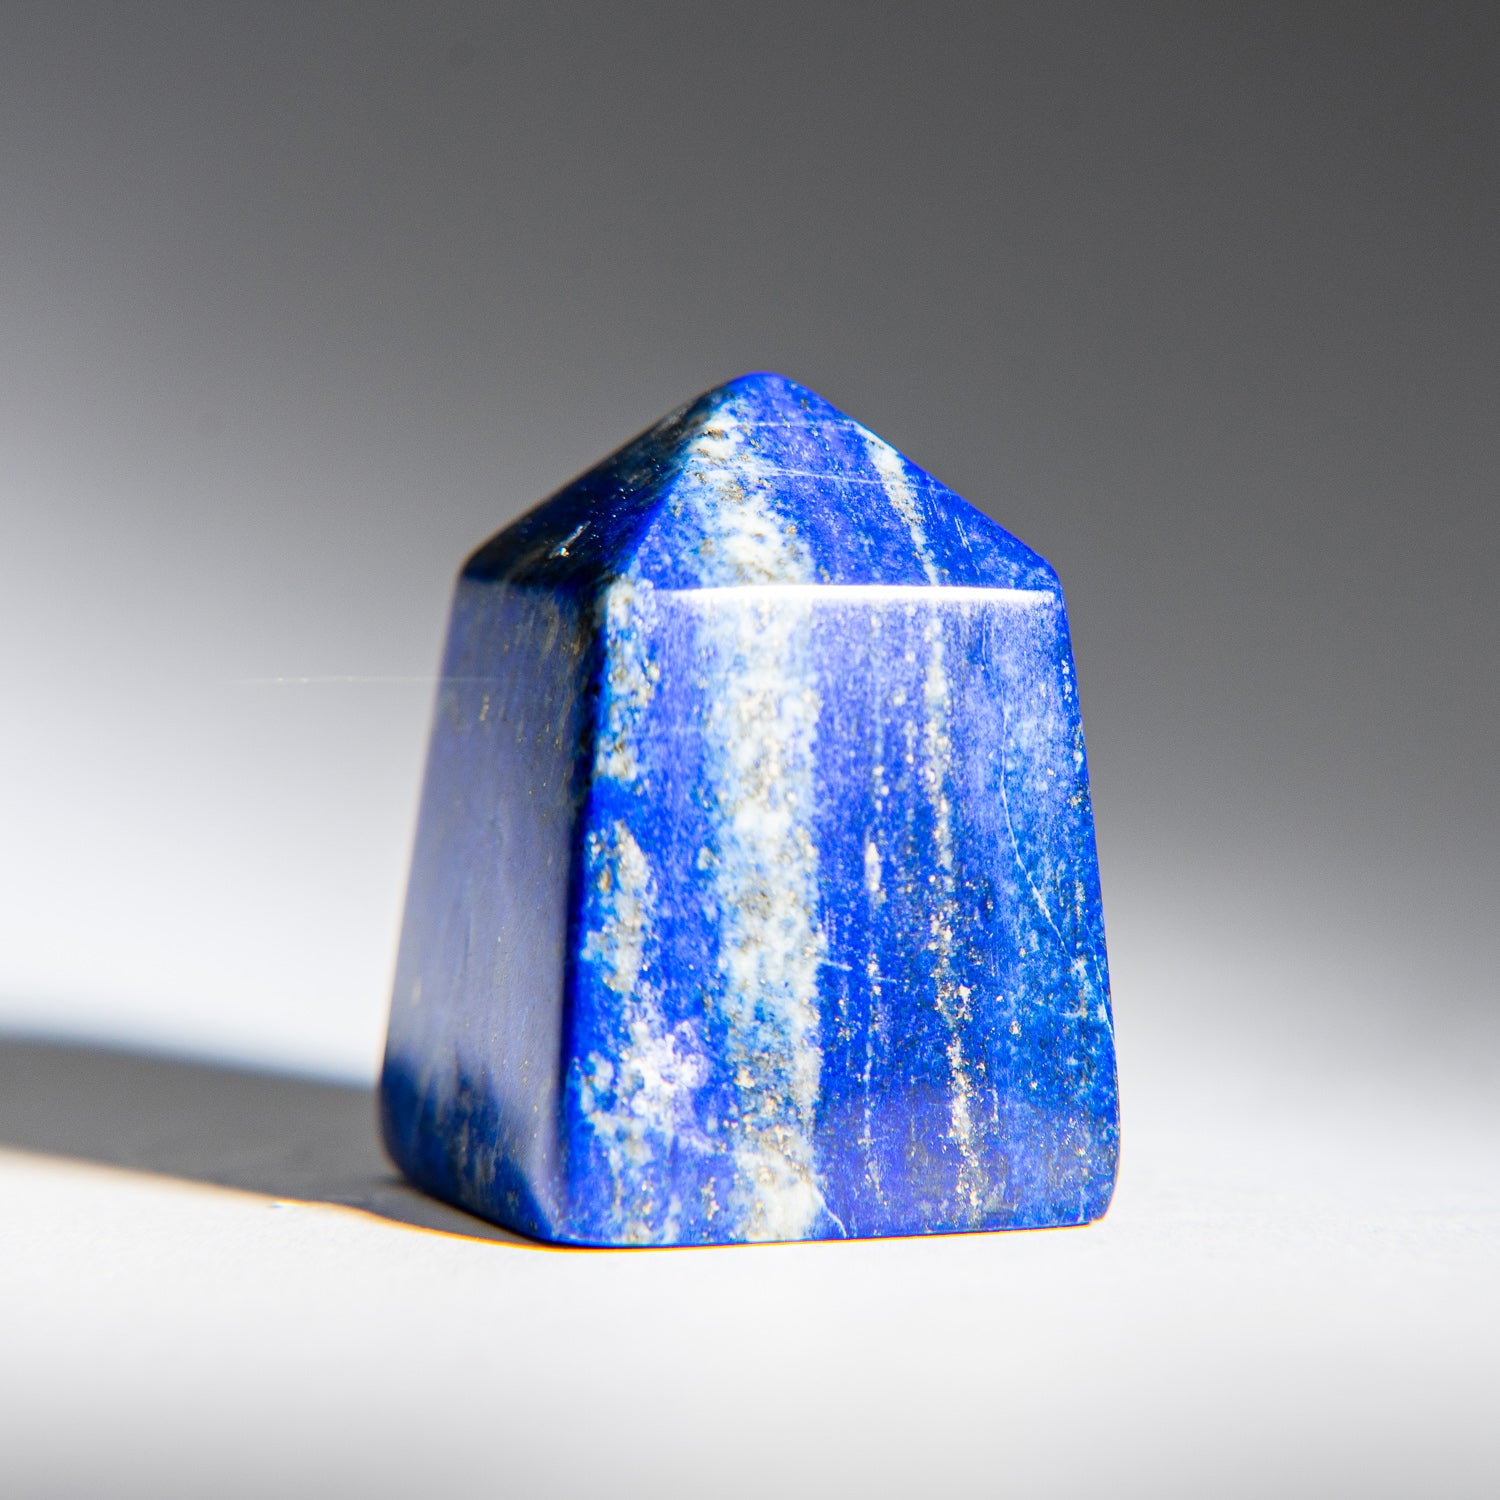 Polished Lapis Lazuli Obelisk from Afghanistan (159 grams)